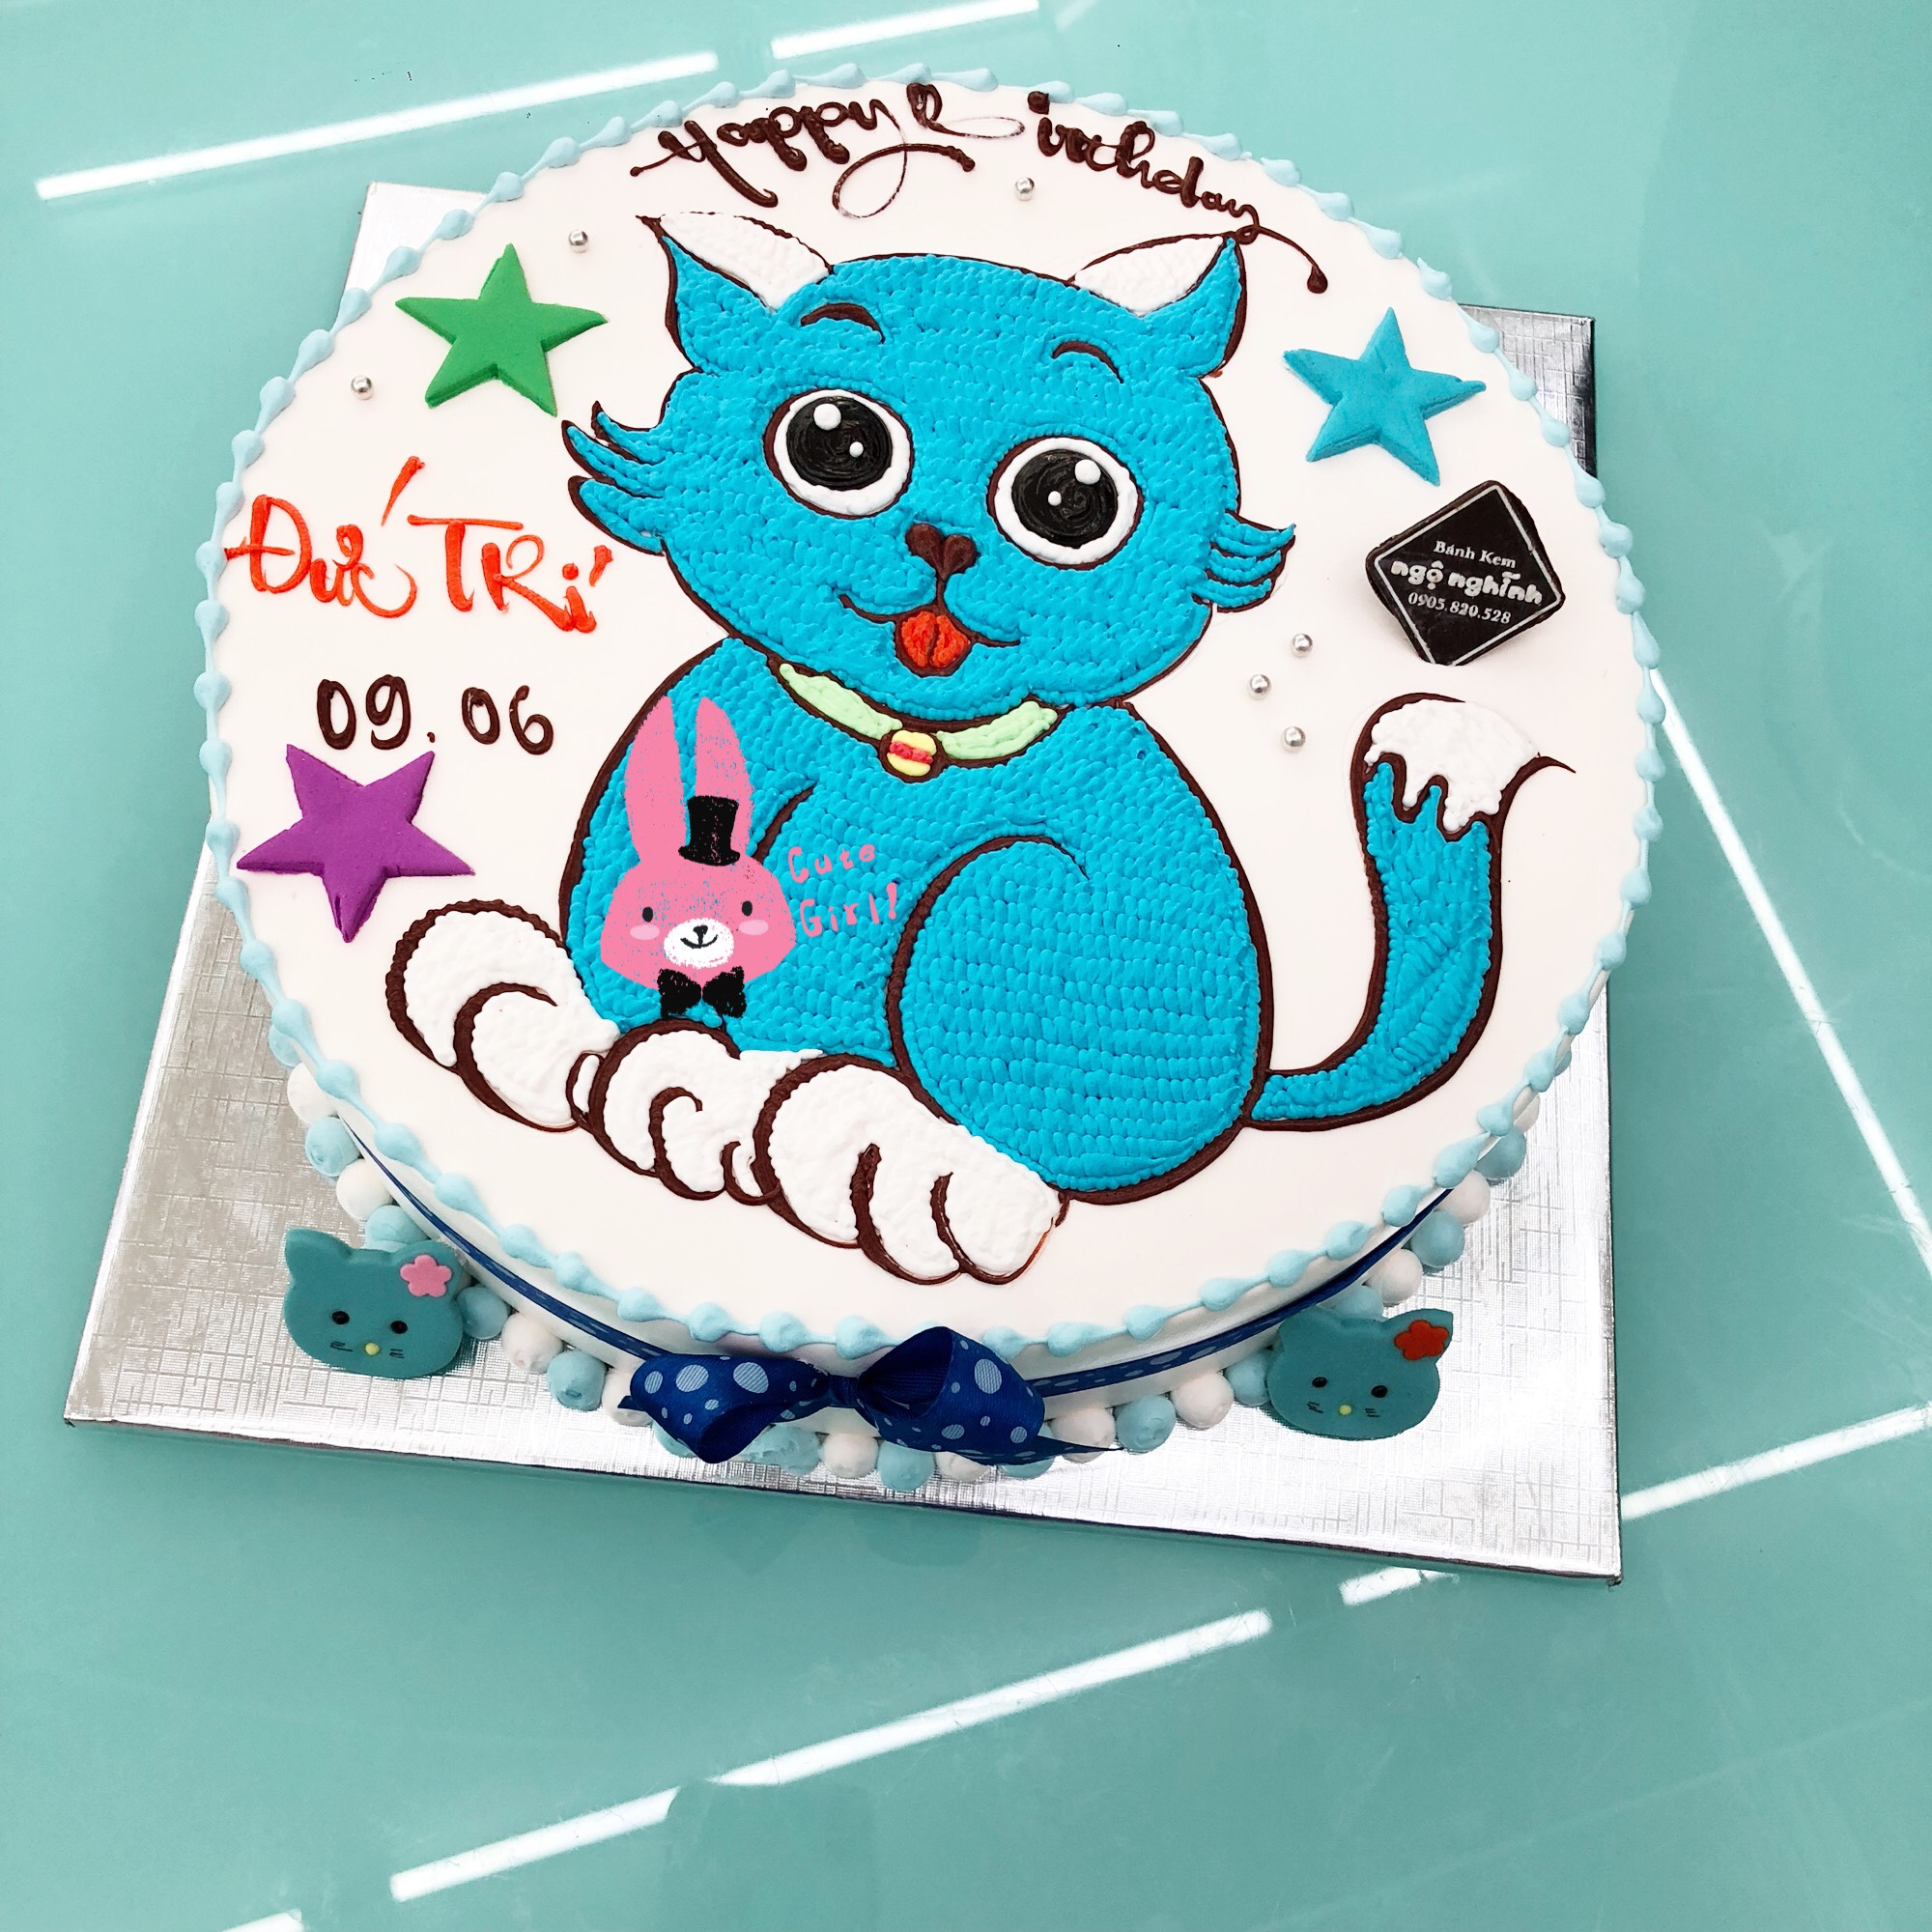 Bánh Sinh Nhật Vẽ Hình Con Mèo Tuổi Mẹo Màu Xanh Gắn Ngôi Sao Nhỏ Đáng Yêu  Hấp Dẫn | Bánh Kem Ngộ Nghĩnh